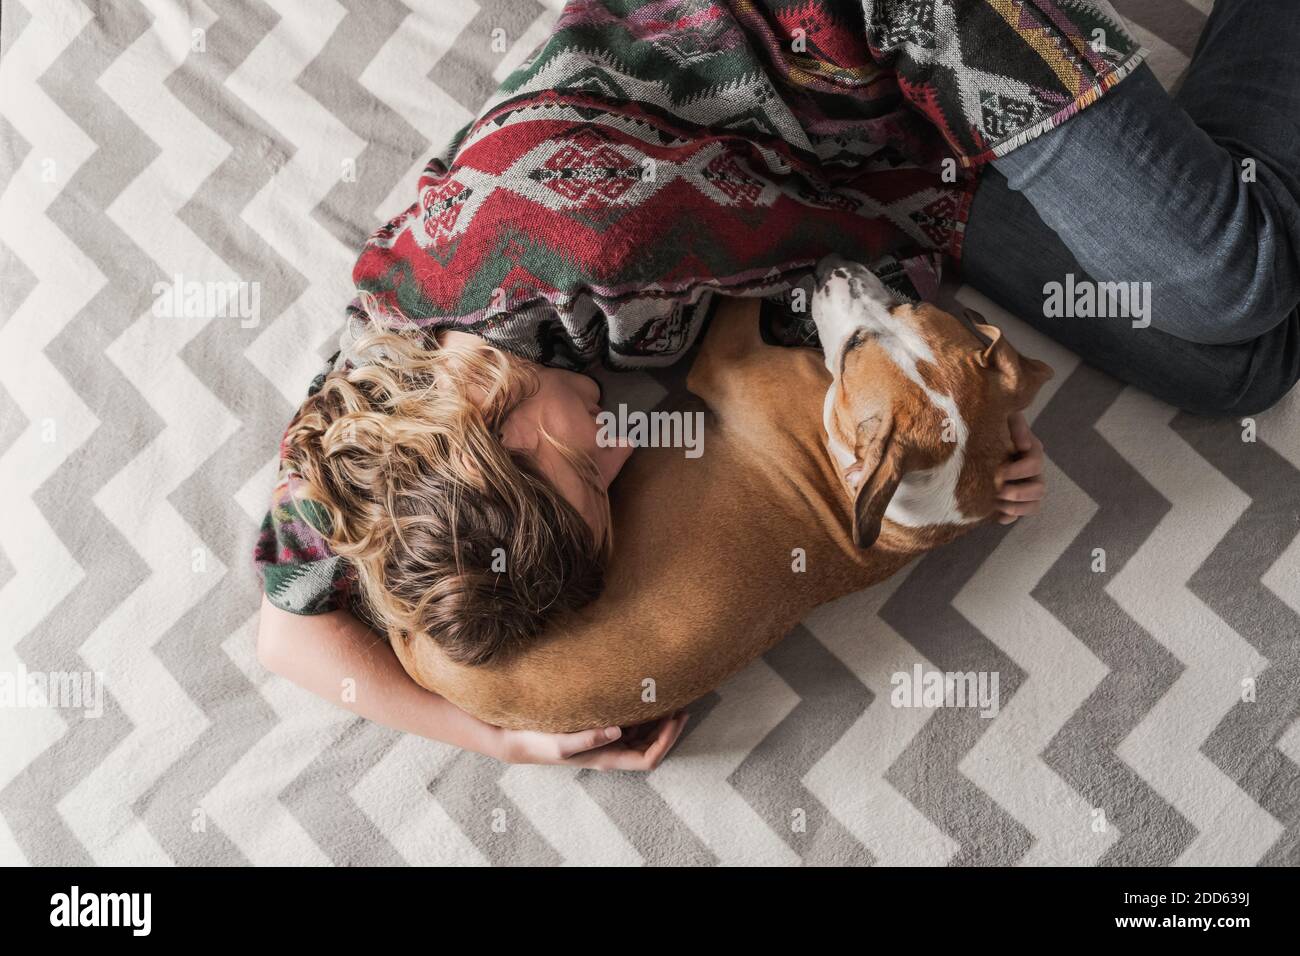 La mujer se pone con un perro y la abraza. Apoyo emocional, depresión y alivio del estrés con mascotas durante el cierre y permanecer en las órdenes de casa Foto de stock